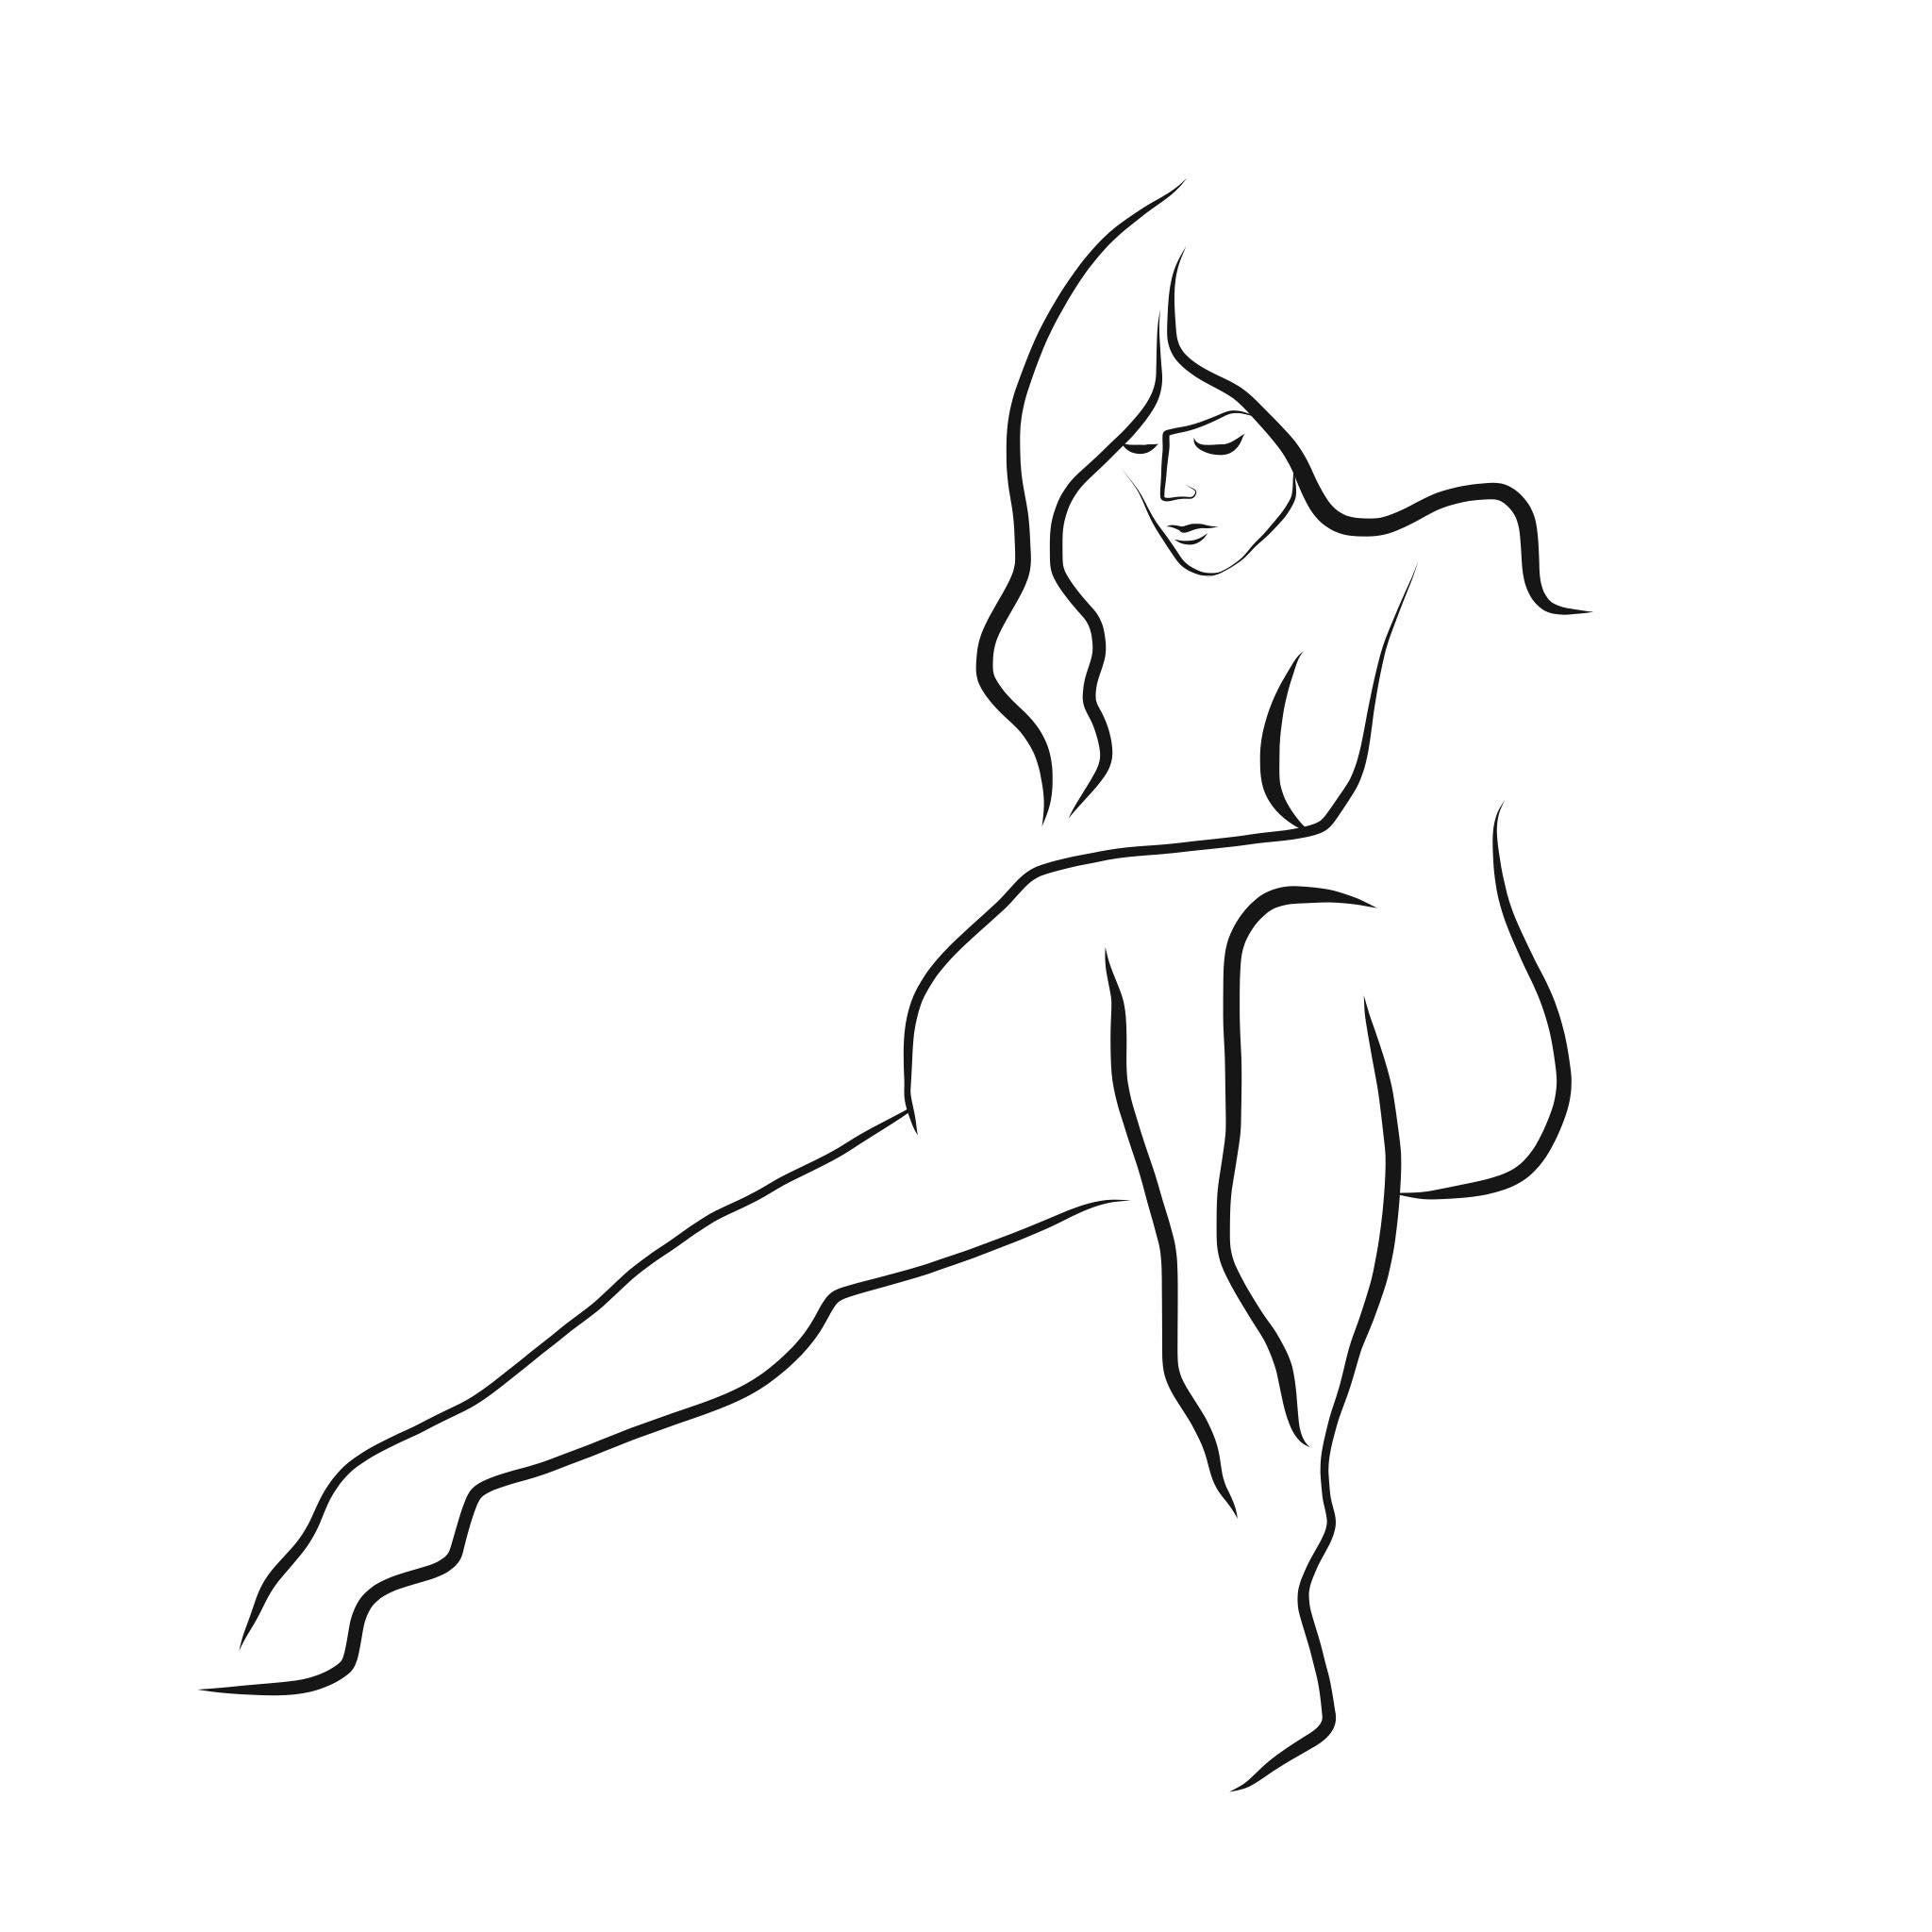 Michael Binkley Nude Print – Haiku #40 – Digitale Vector-Zeichnung, sitzende weibliche Aktfigur